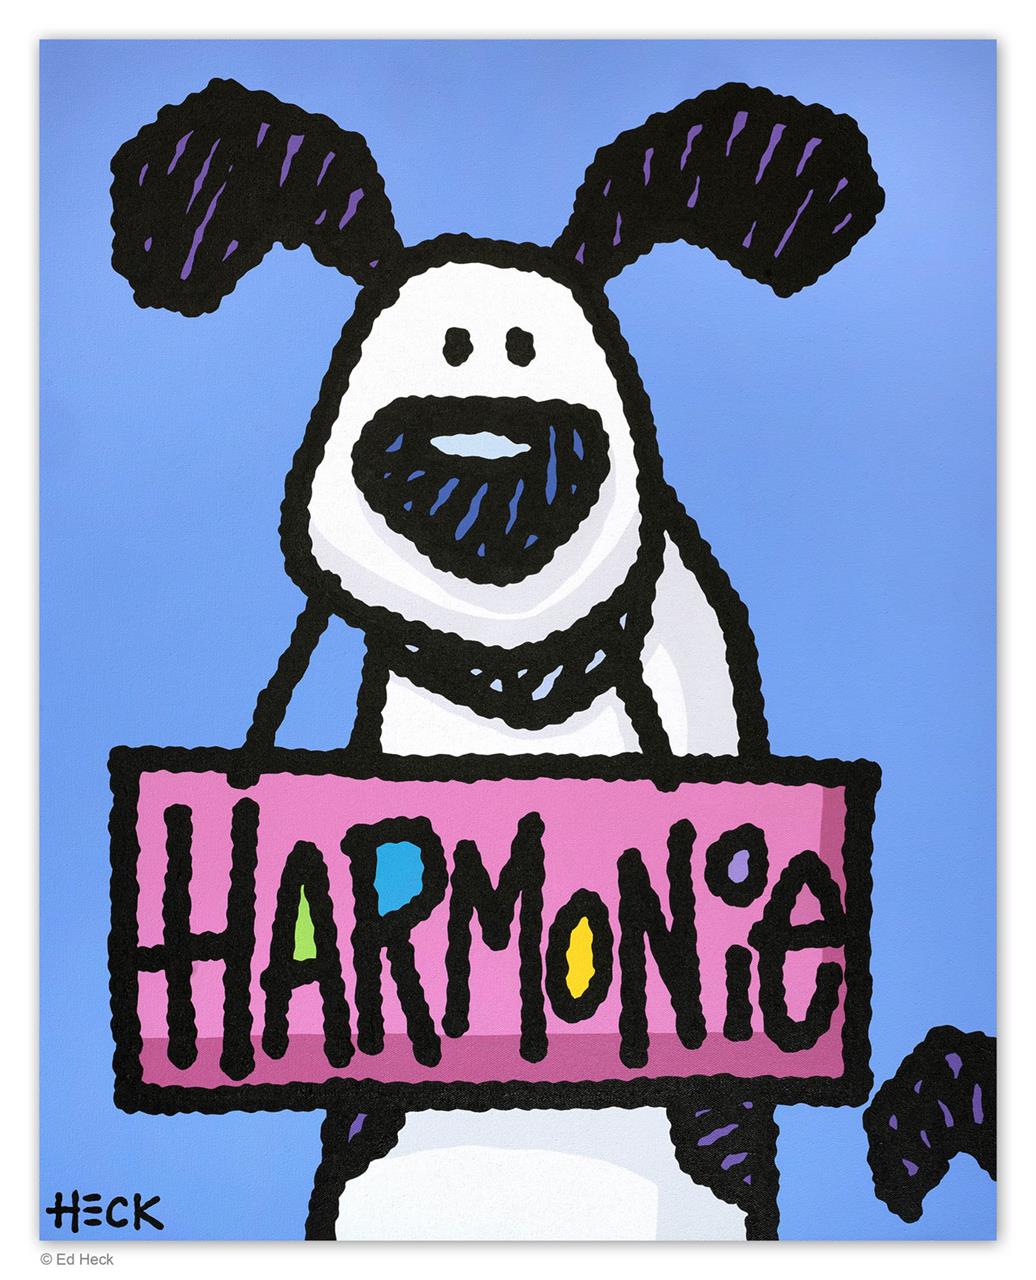 Harmonie - Harmony